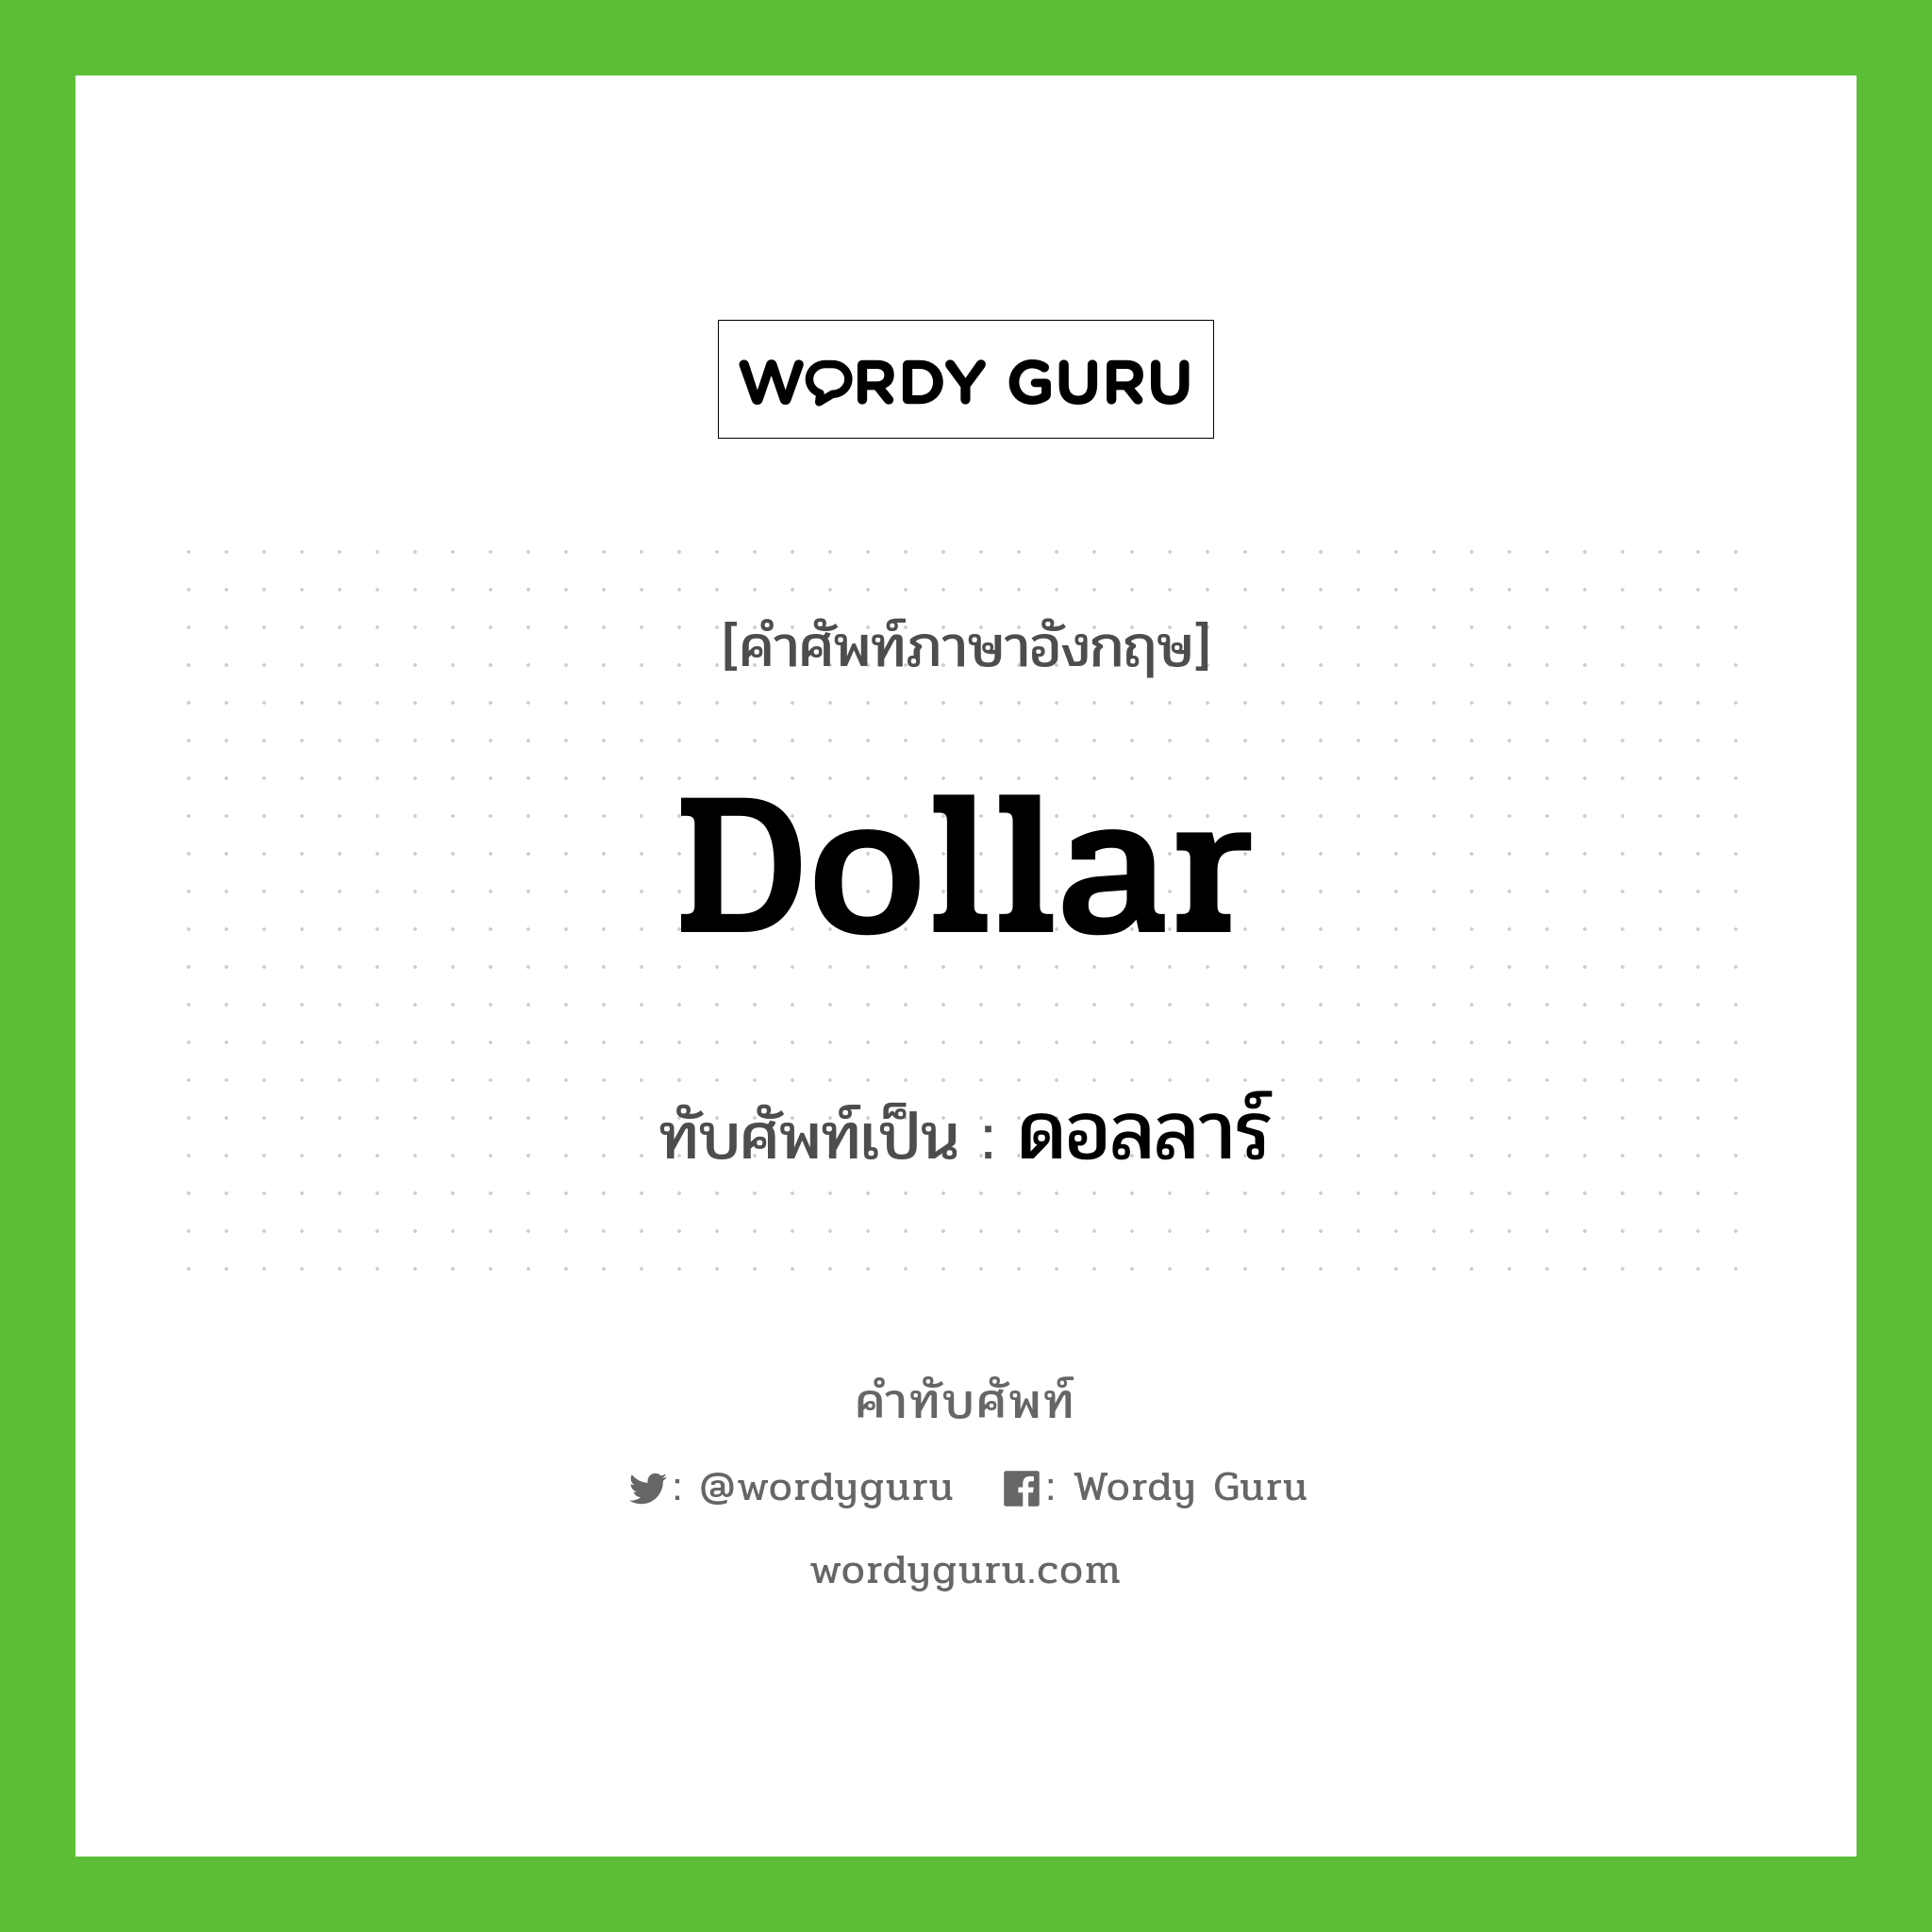 dollar เขียนเป็นคำไทยว่าอะไร?, คำศัพท์ภาษาอังกฤษ dollar ทับศัพท์เป็น ดอลลาร์